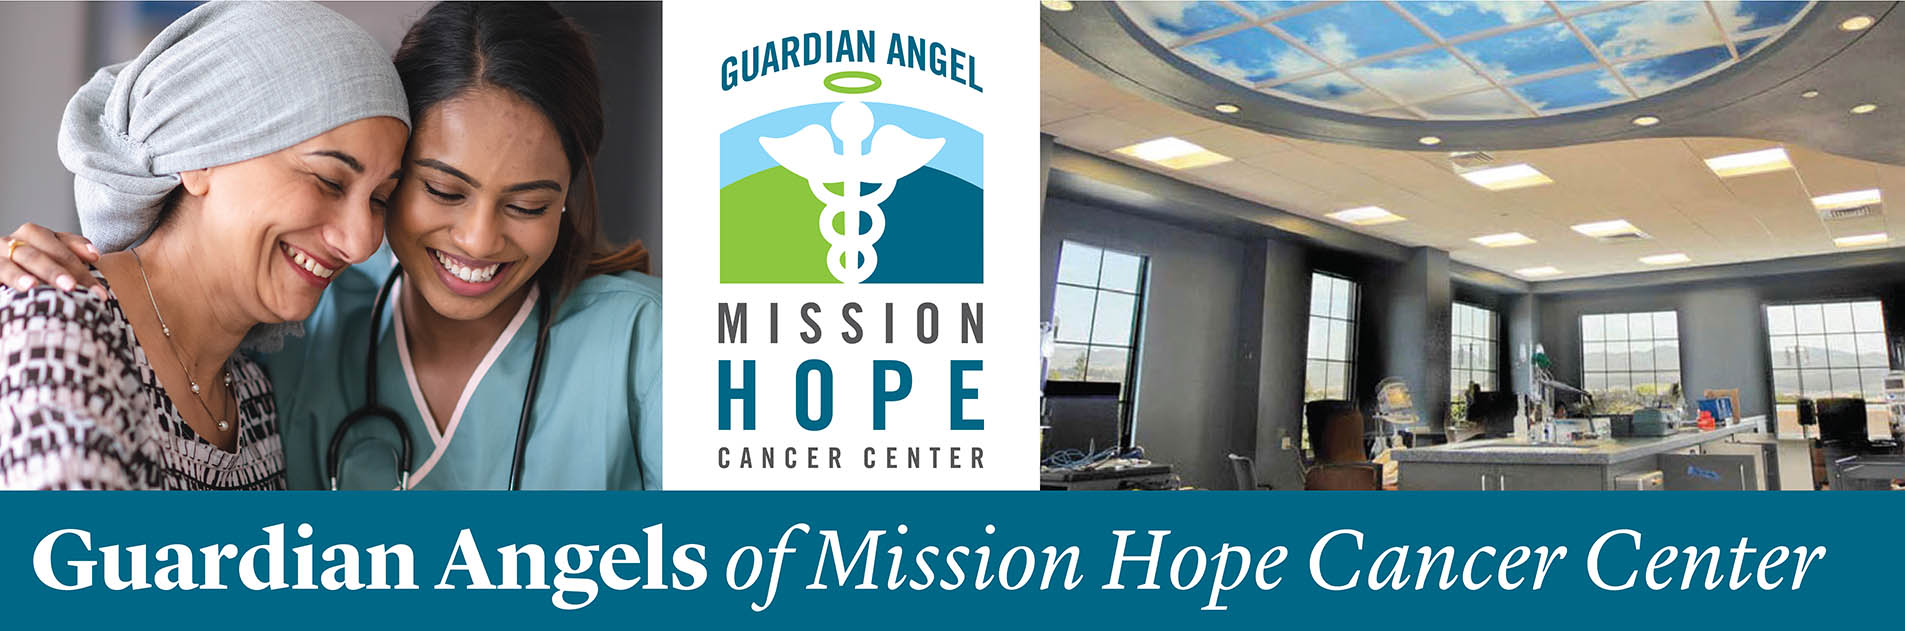 Guardian Angel Mission Hope Cancer Center